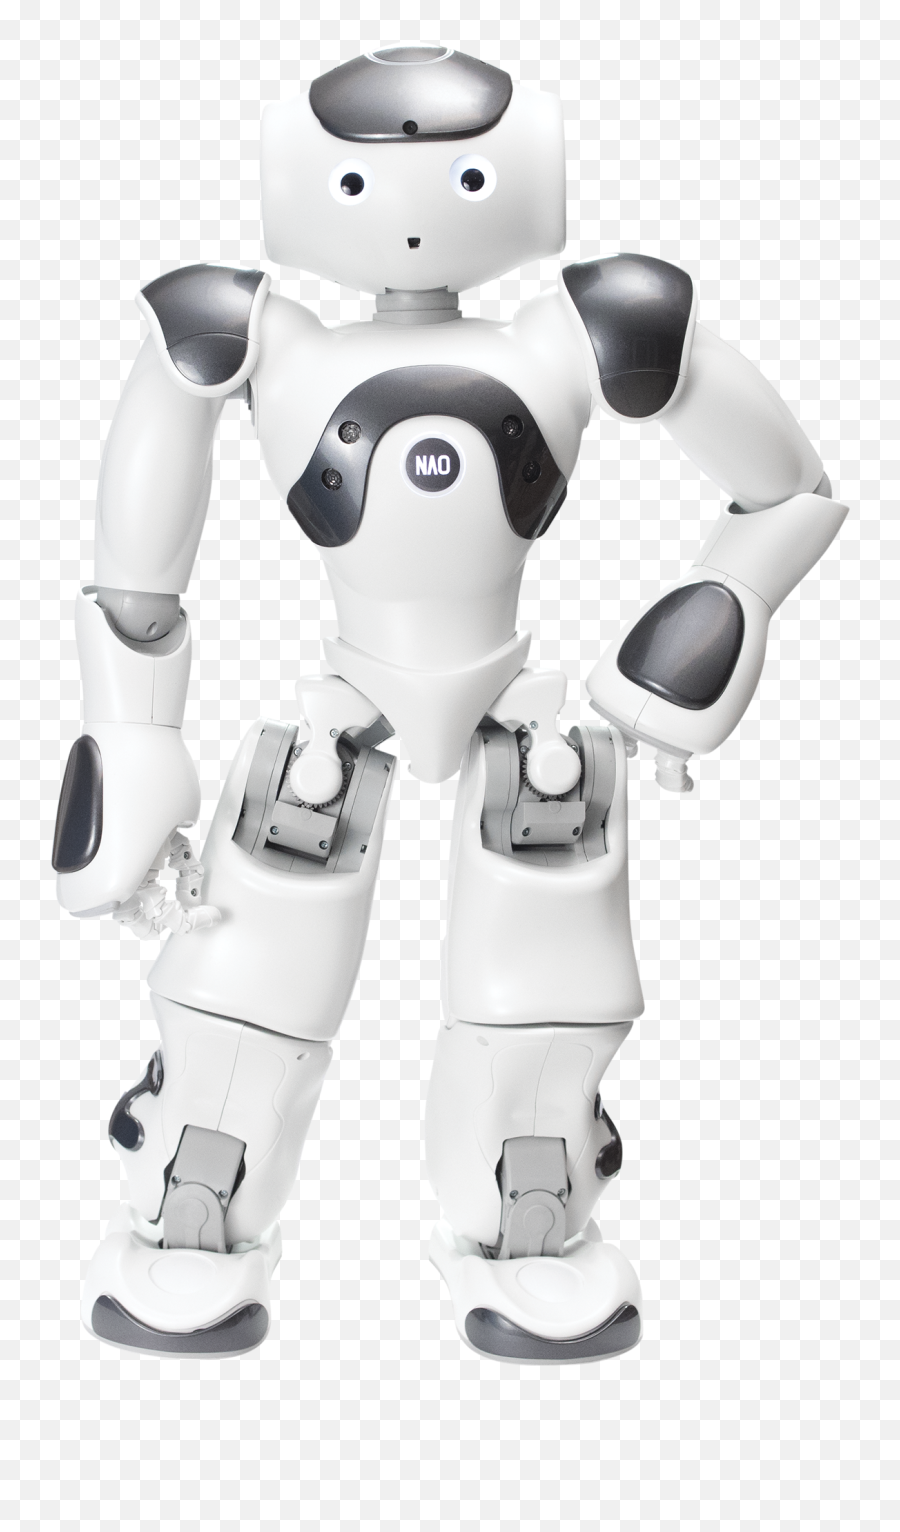 Robot Transparent Image Png Play - Nao Robot,Robot Transparent Background